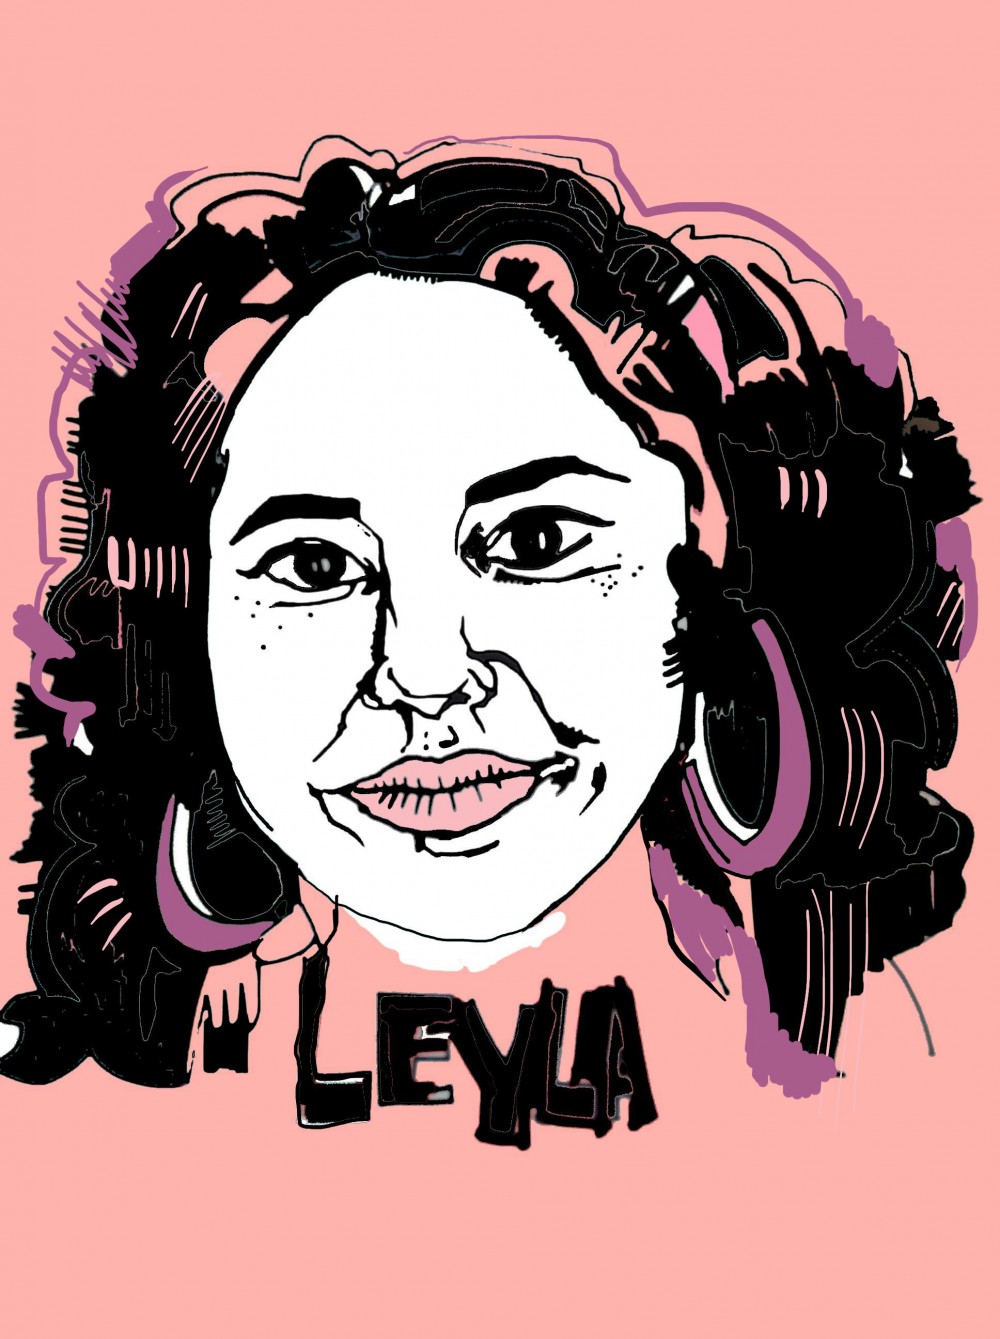 Meet the gal-dem: Leyla Reynolds